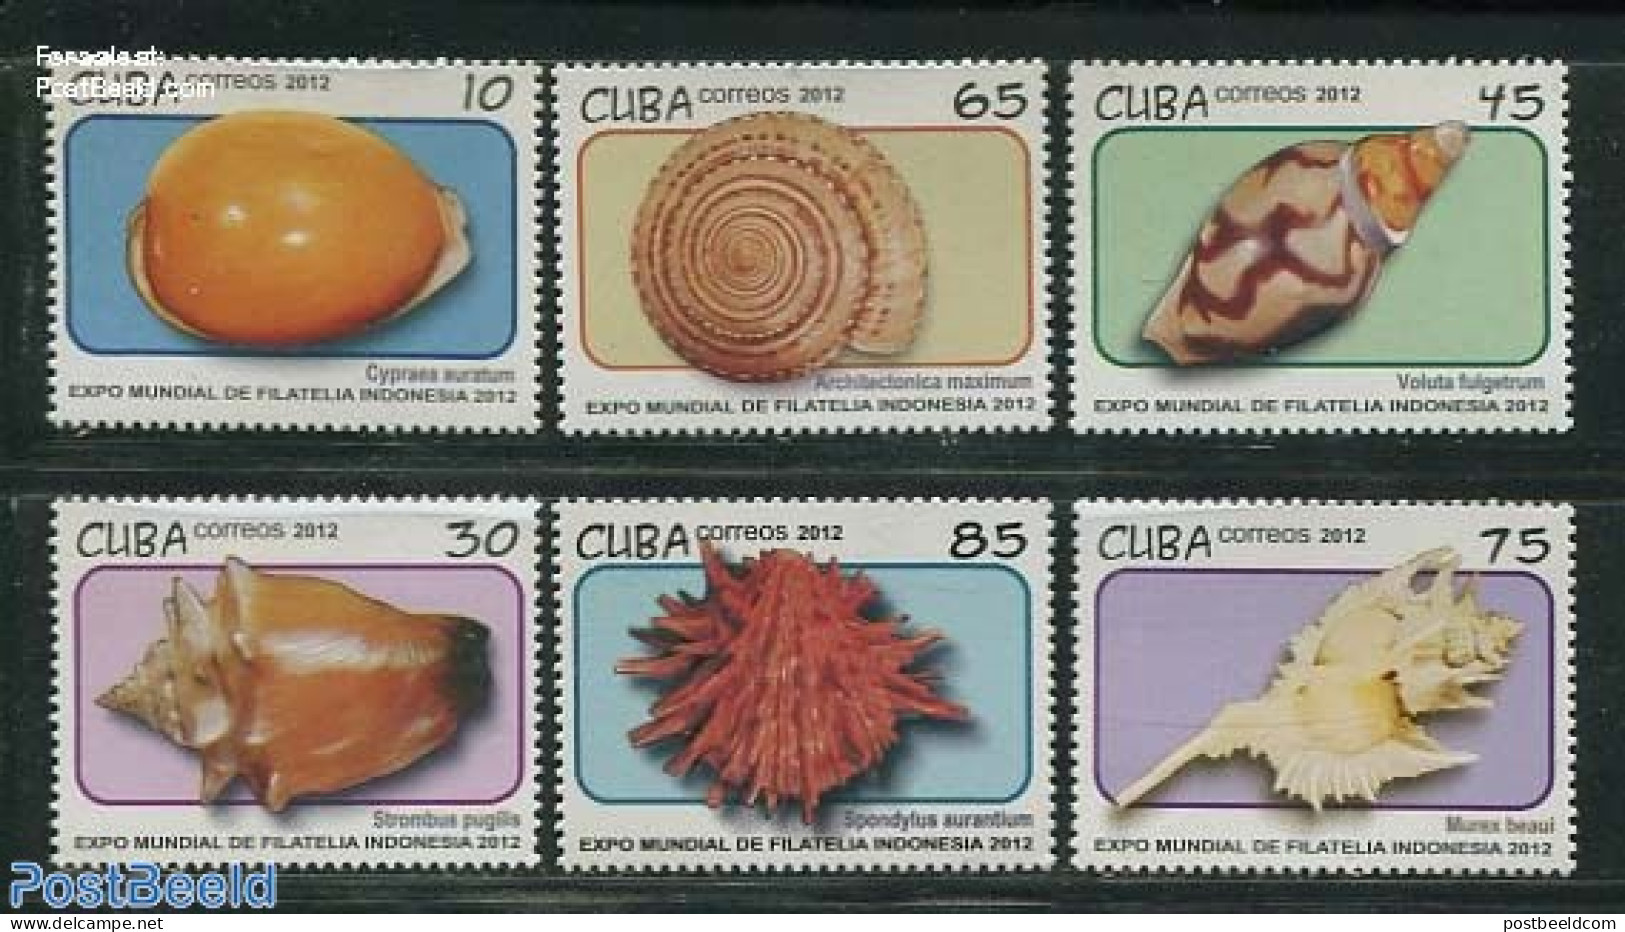 Cuba 2012 Shells 6v, Mint NH, Nature - Shells & Crustaceans - Nuevos